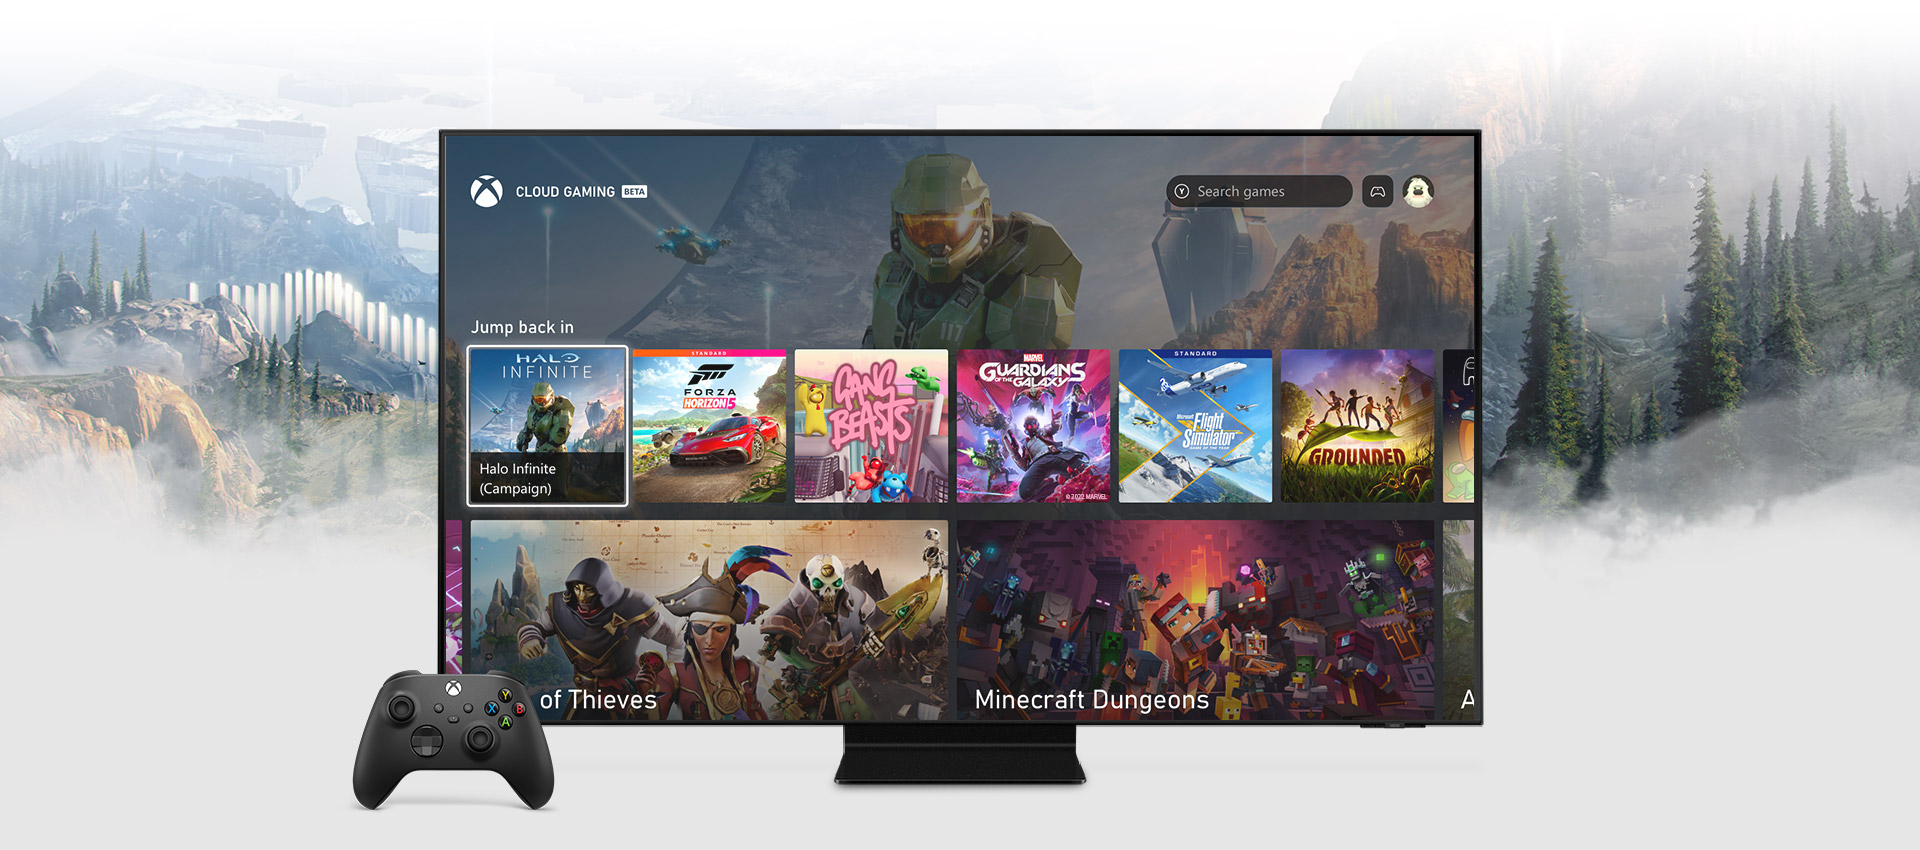 삼성 스마트 TV에 표시된 Xbox 앱 홈 화면